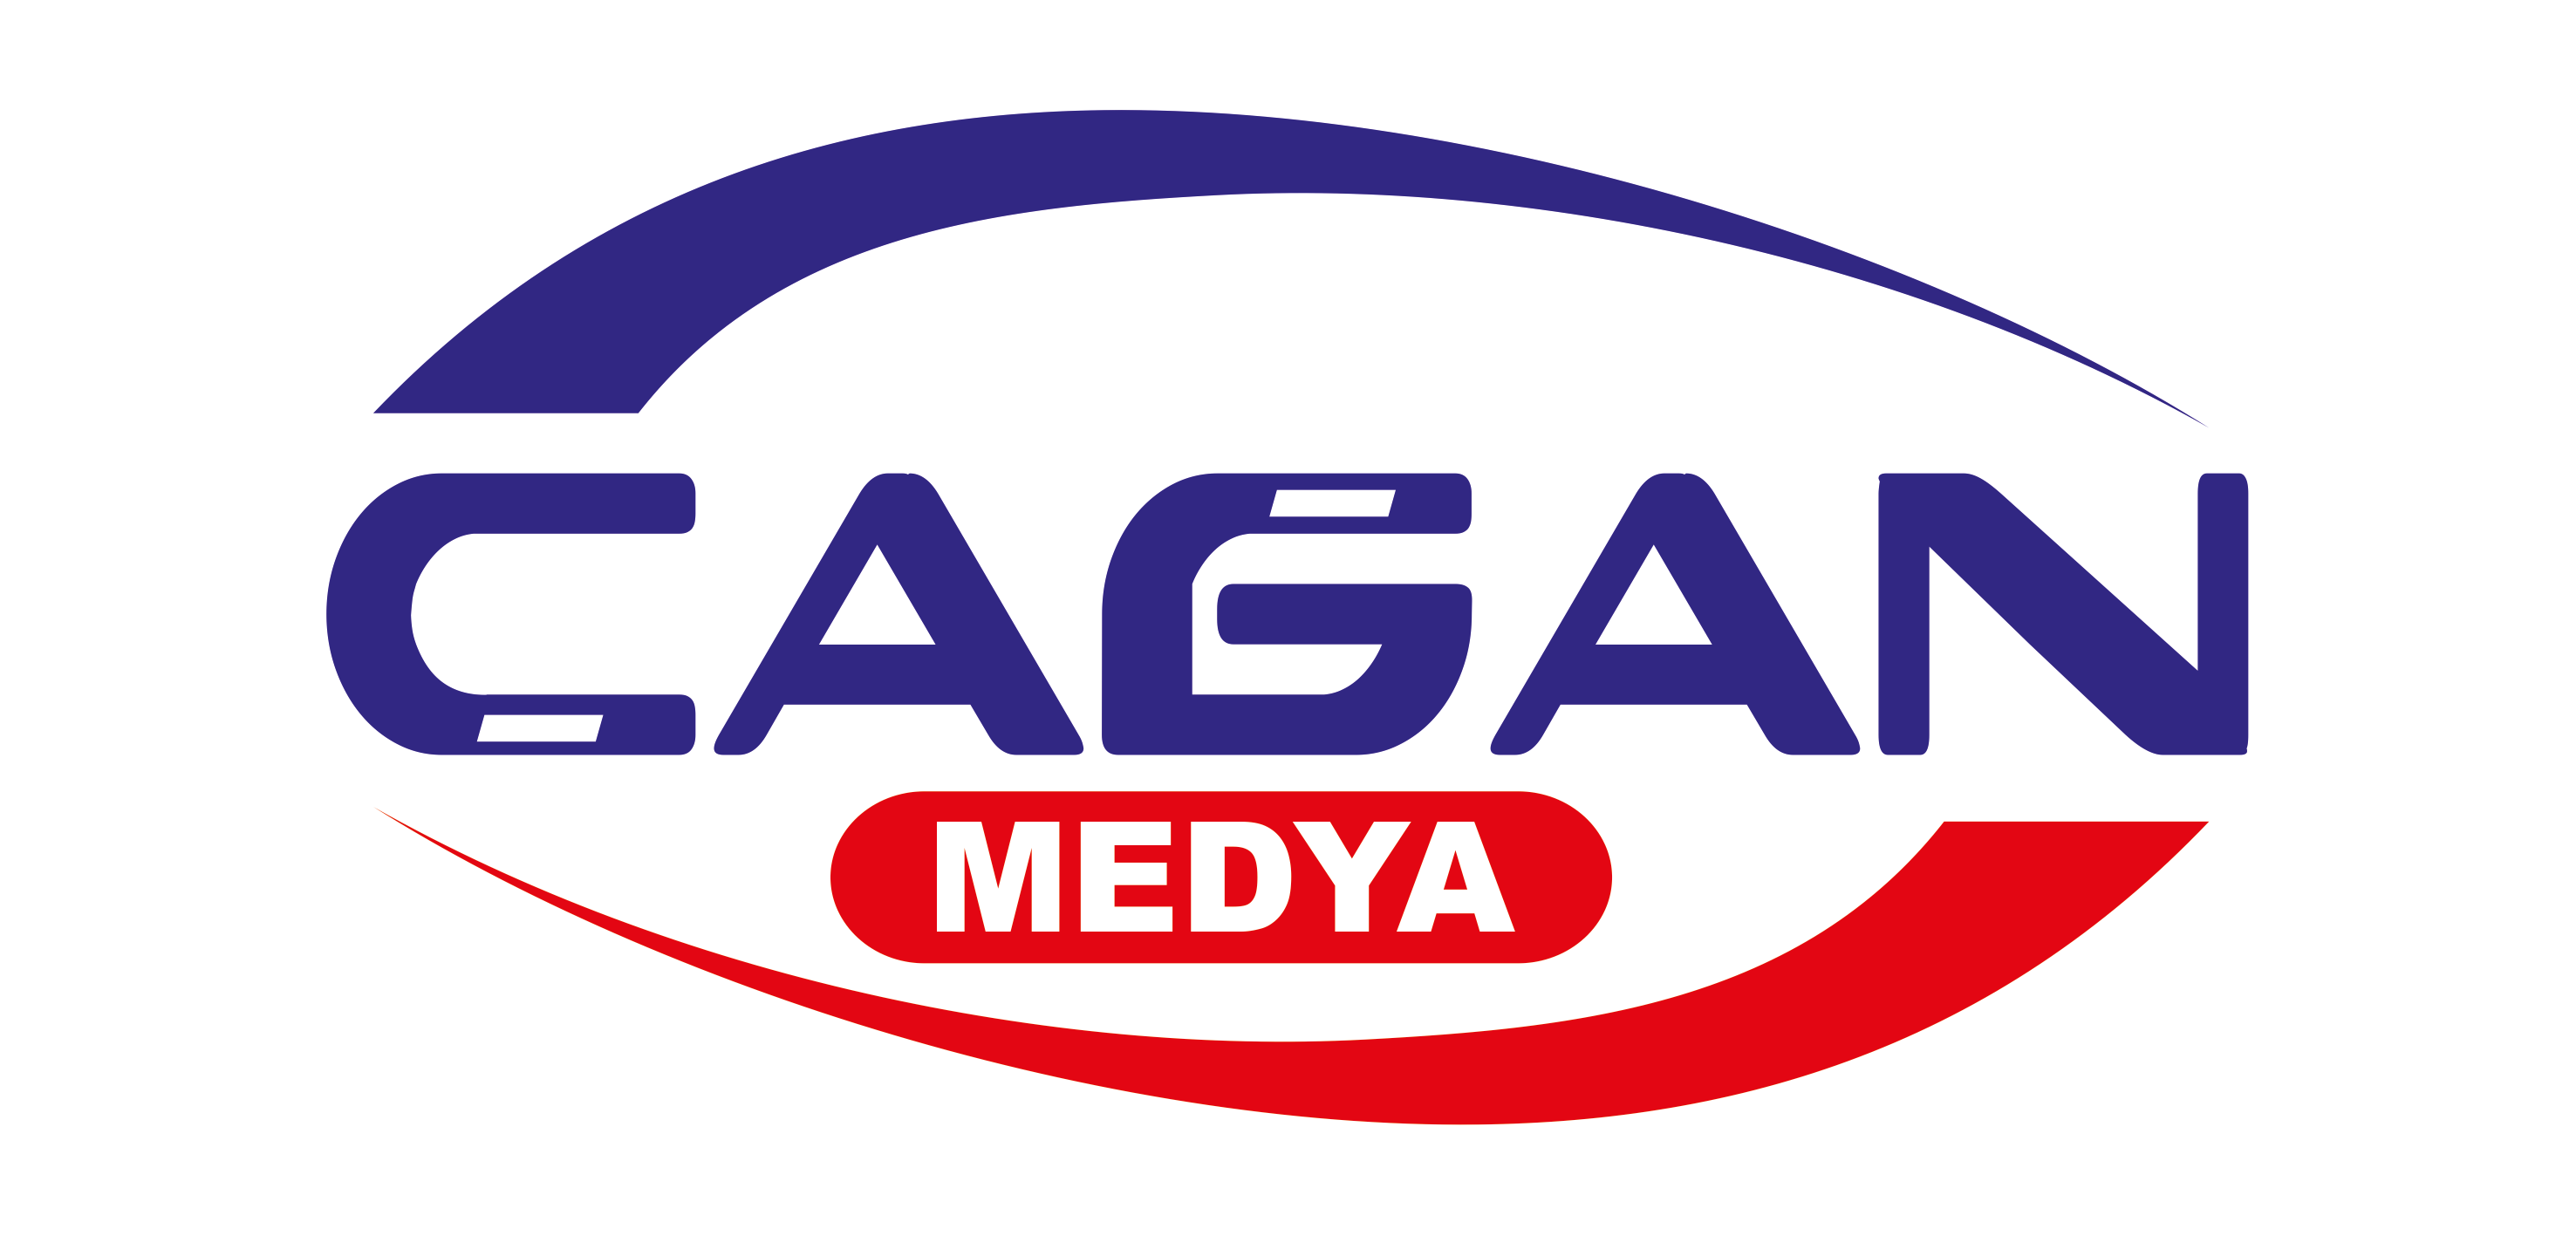 Çağan Medya - Kanal 38 - Haber 38 Gazetesi - TV38 - Heber Sitesi - Yerel Haberler